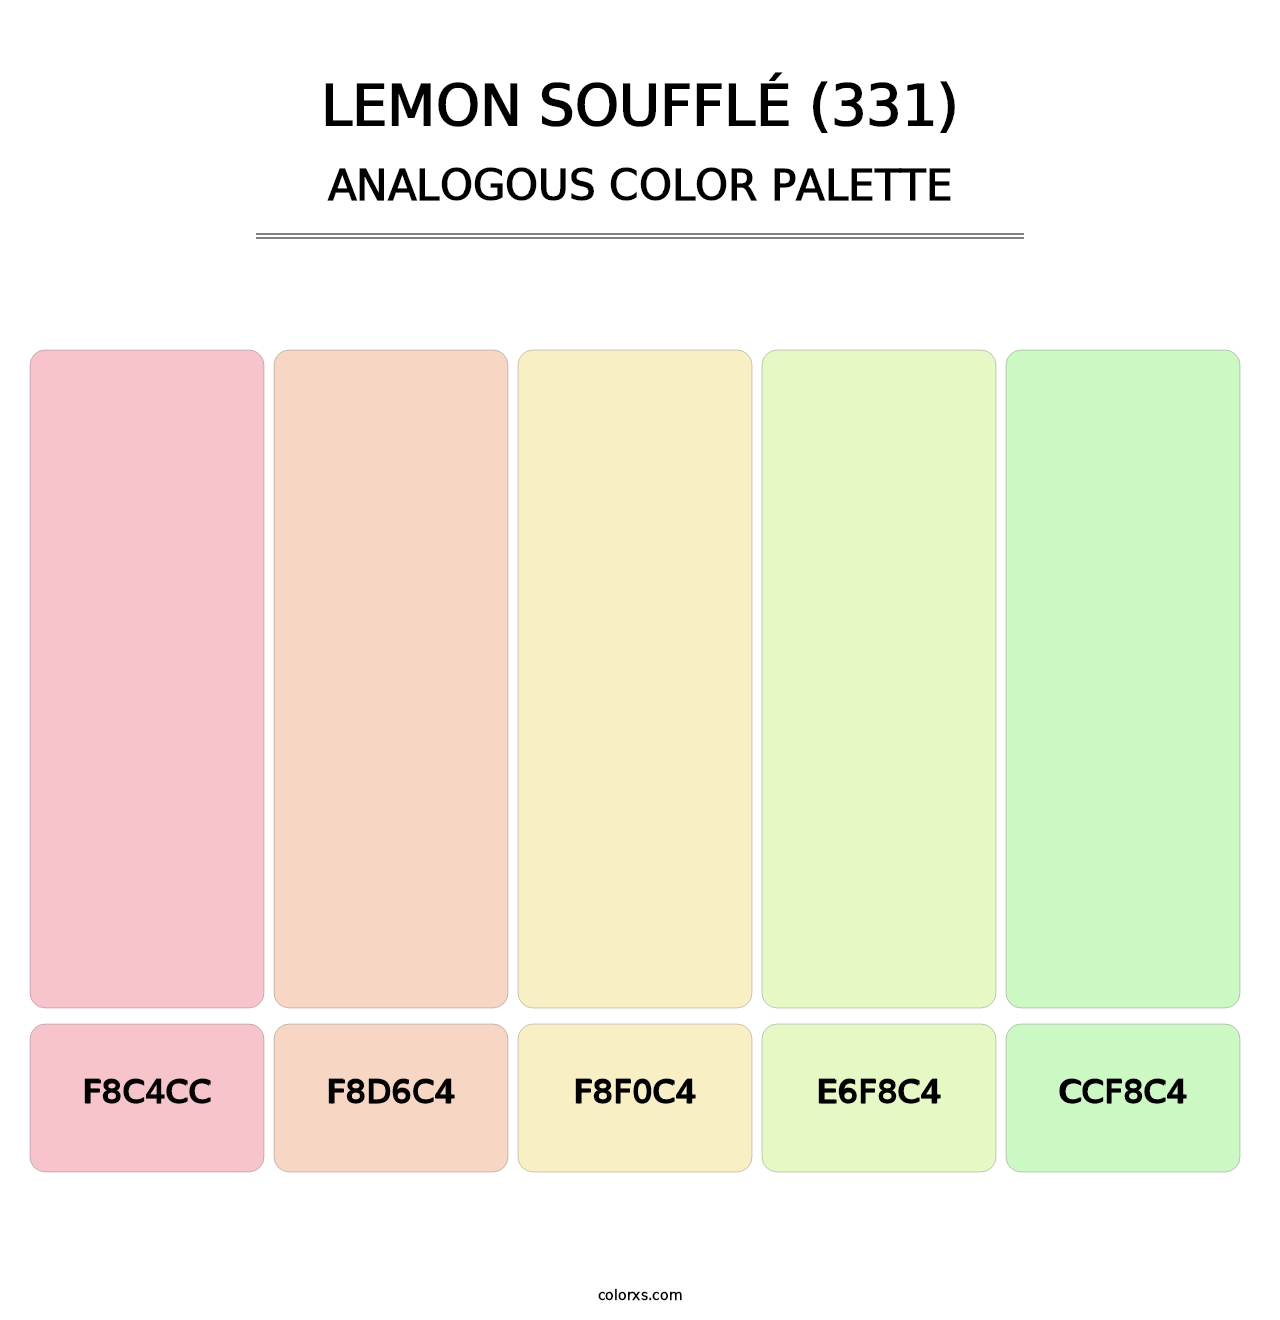 Lemon Soufflé (331) - Analogous Color Palette